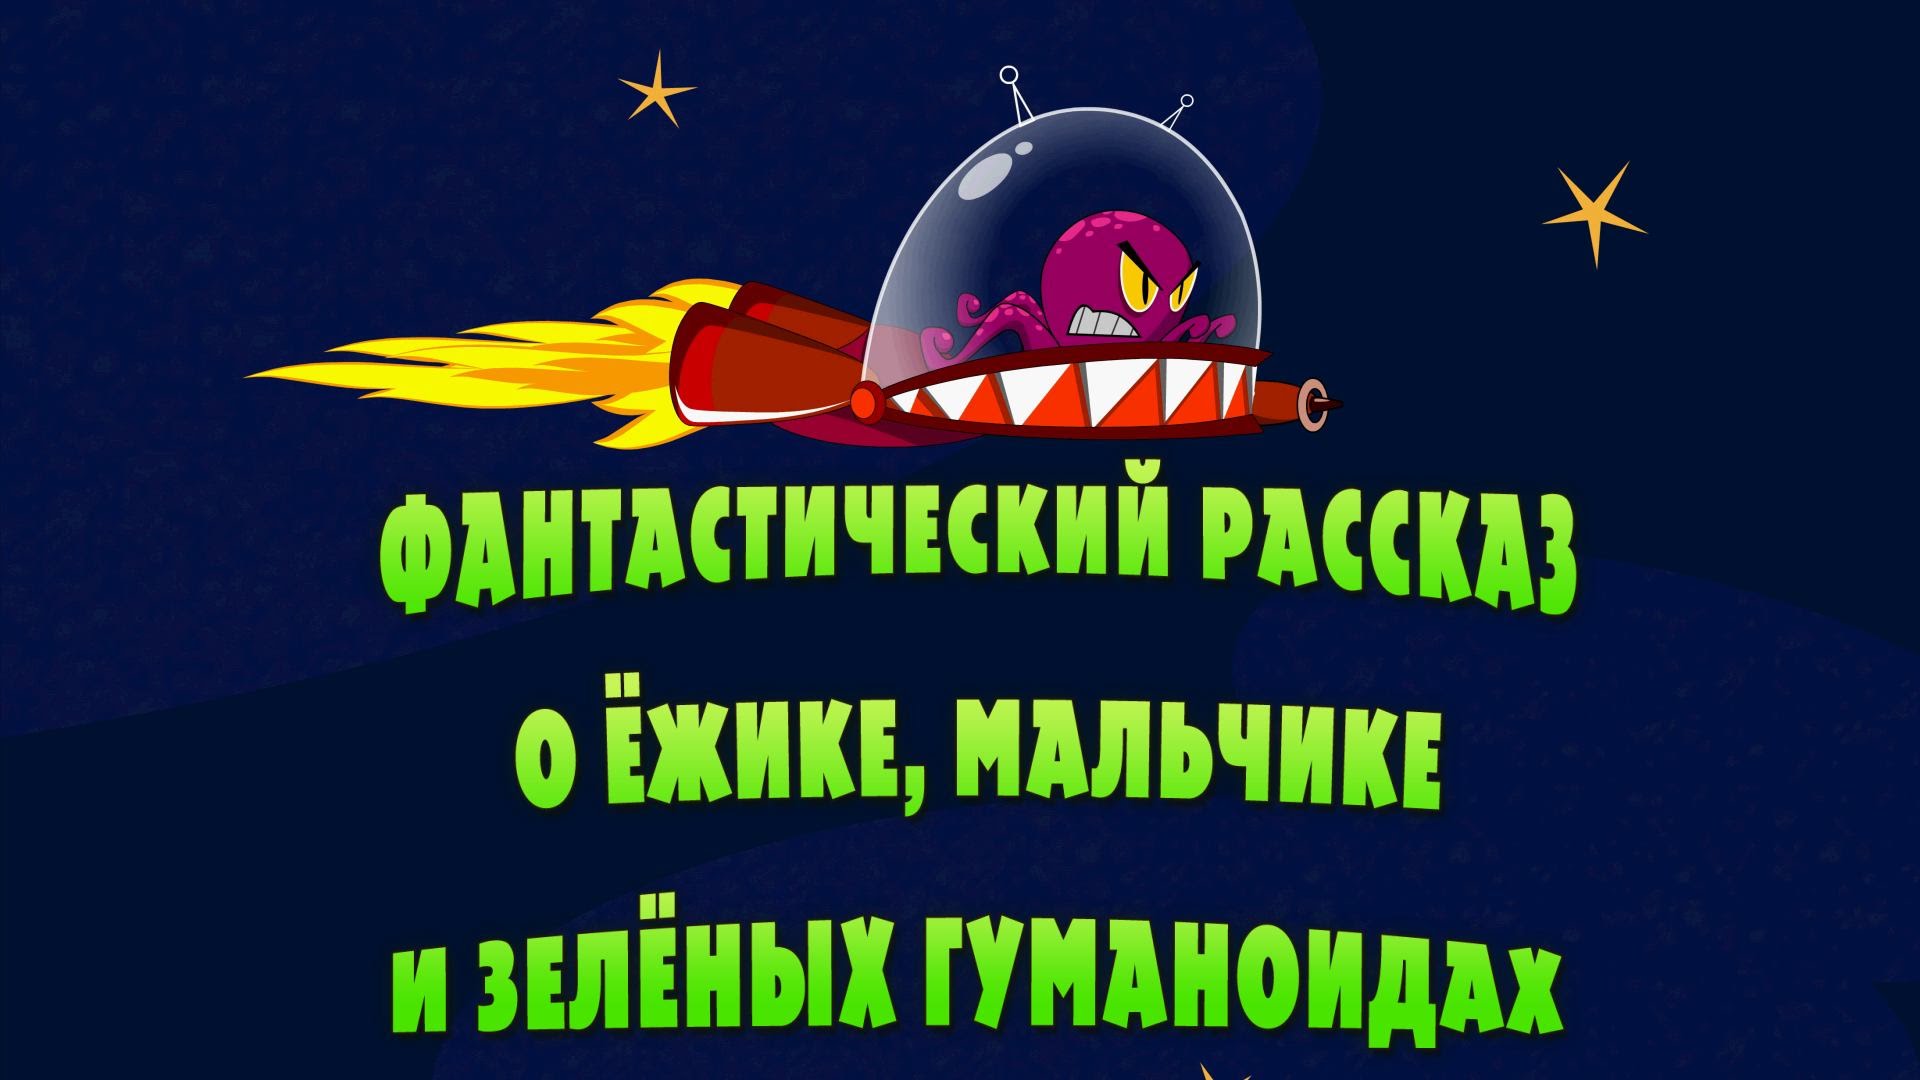 Машкины Страшилки - Фантастический рассказ о ёжике, мальчике и зелёных гуманоидах (14 серия)